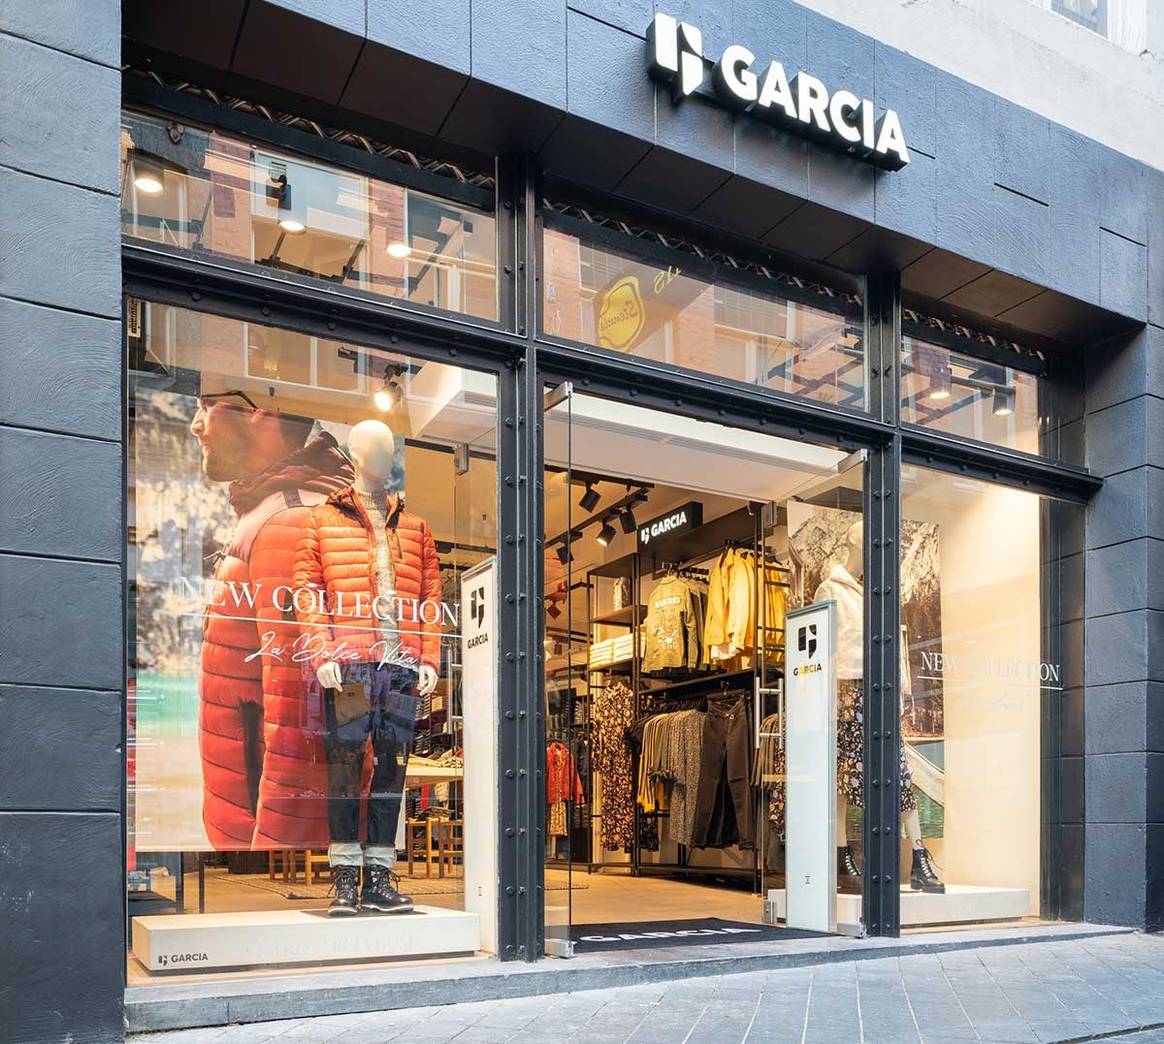 Binnenkijken in het nieuwe winkelconcept van Garcia